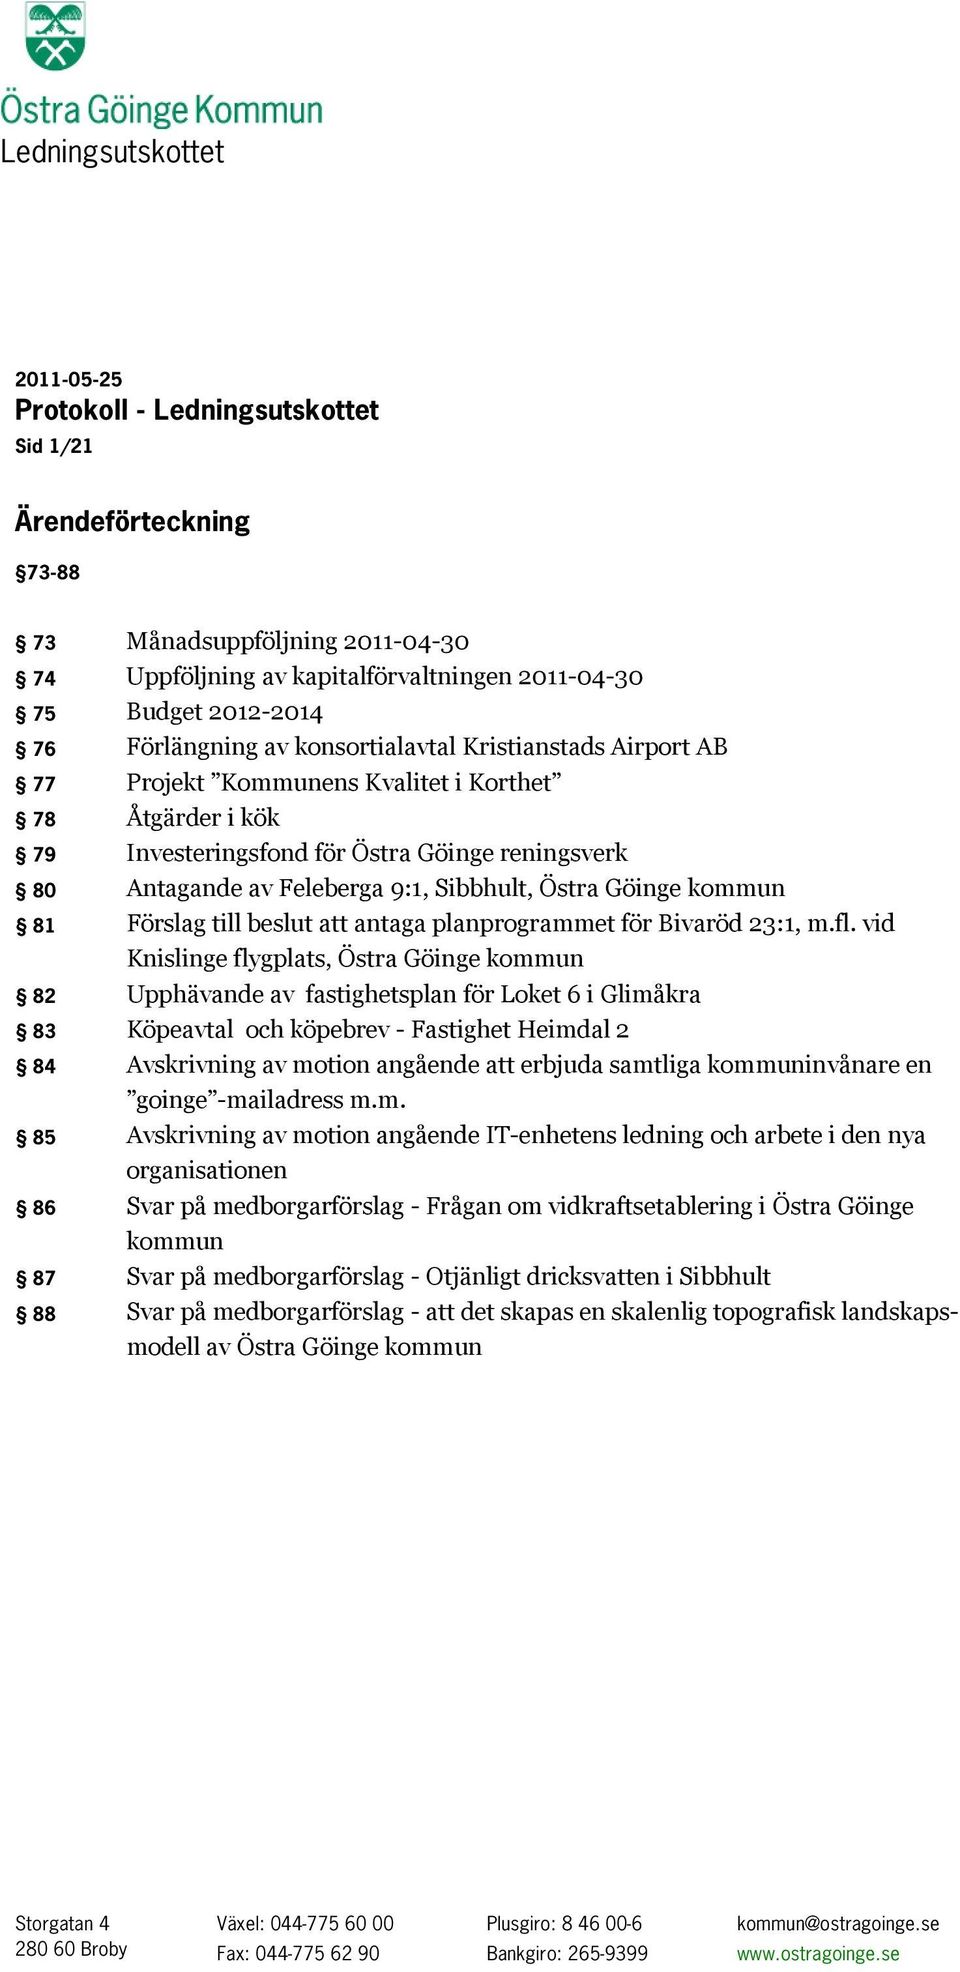 Sibbhult, Östra Göinge kommun 81 Förslag till beslut att antaga planprogrammet för Bivaröd 23:1, m.fl.